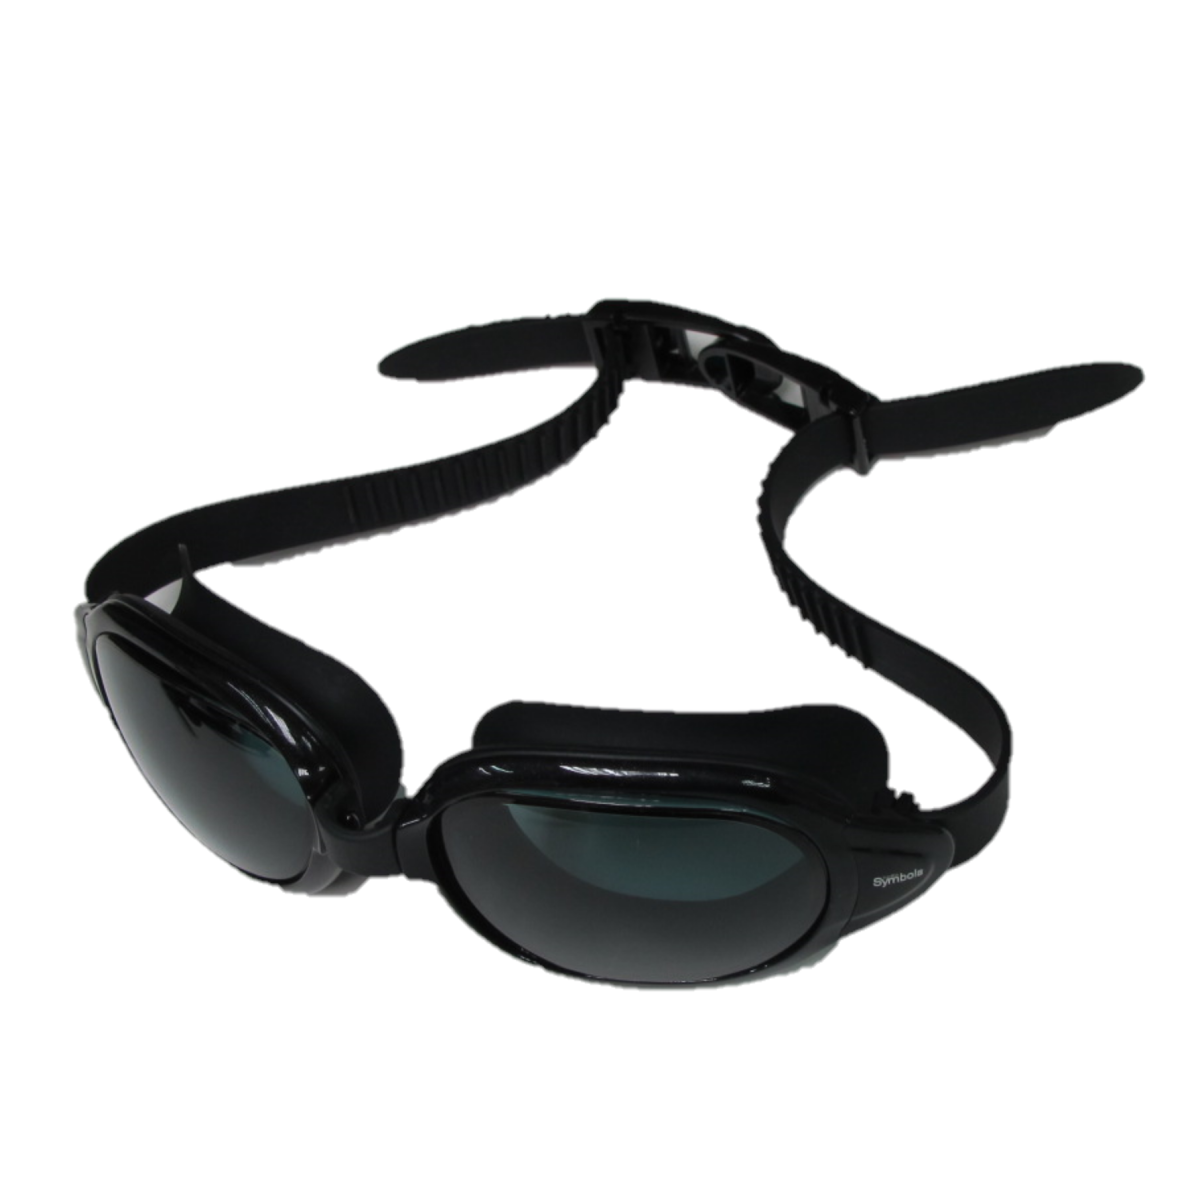 black swimming goggles